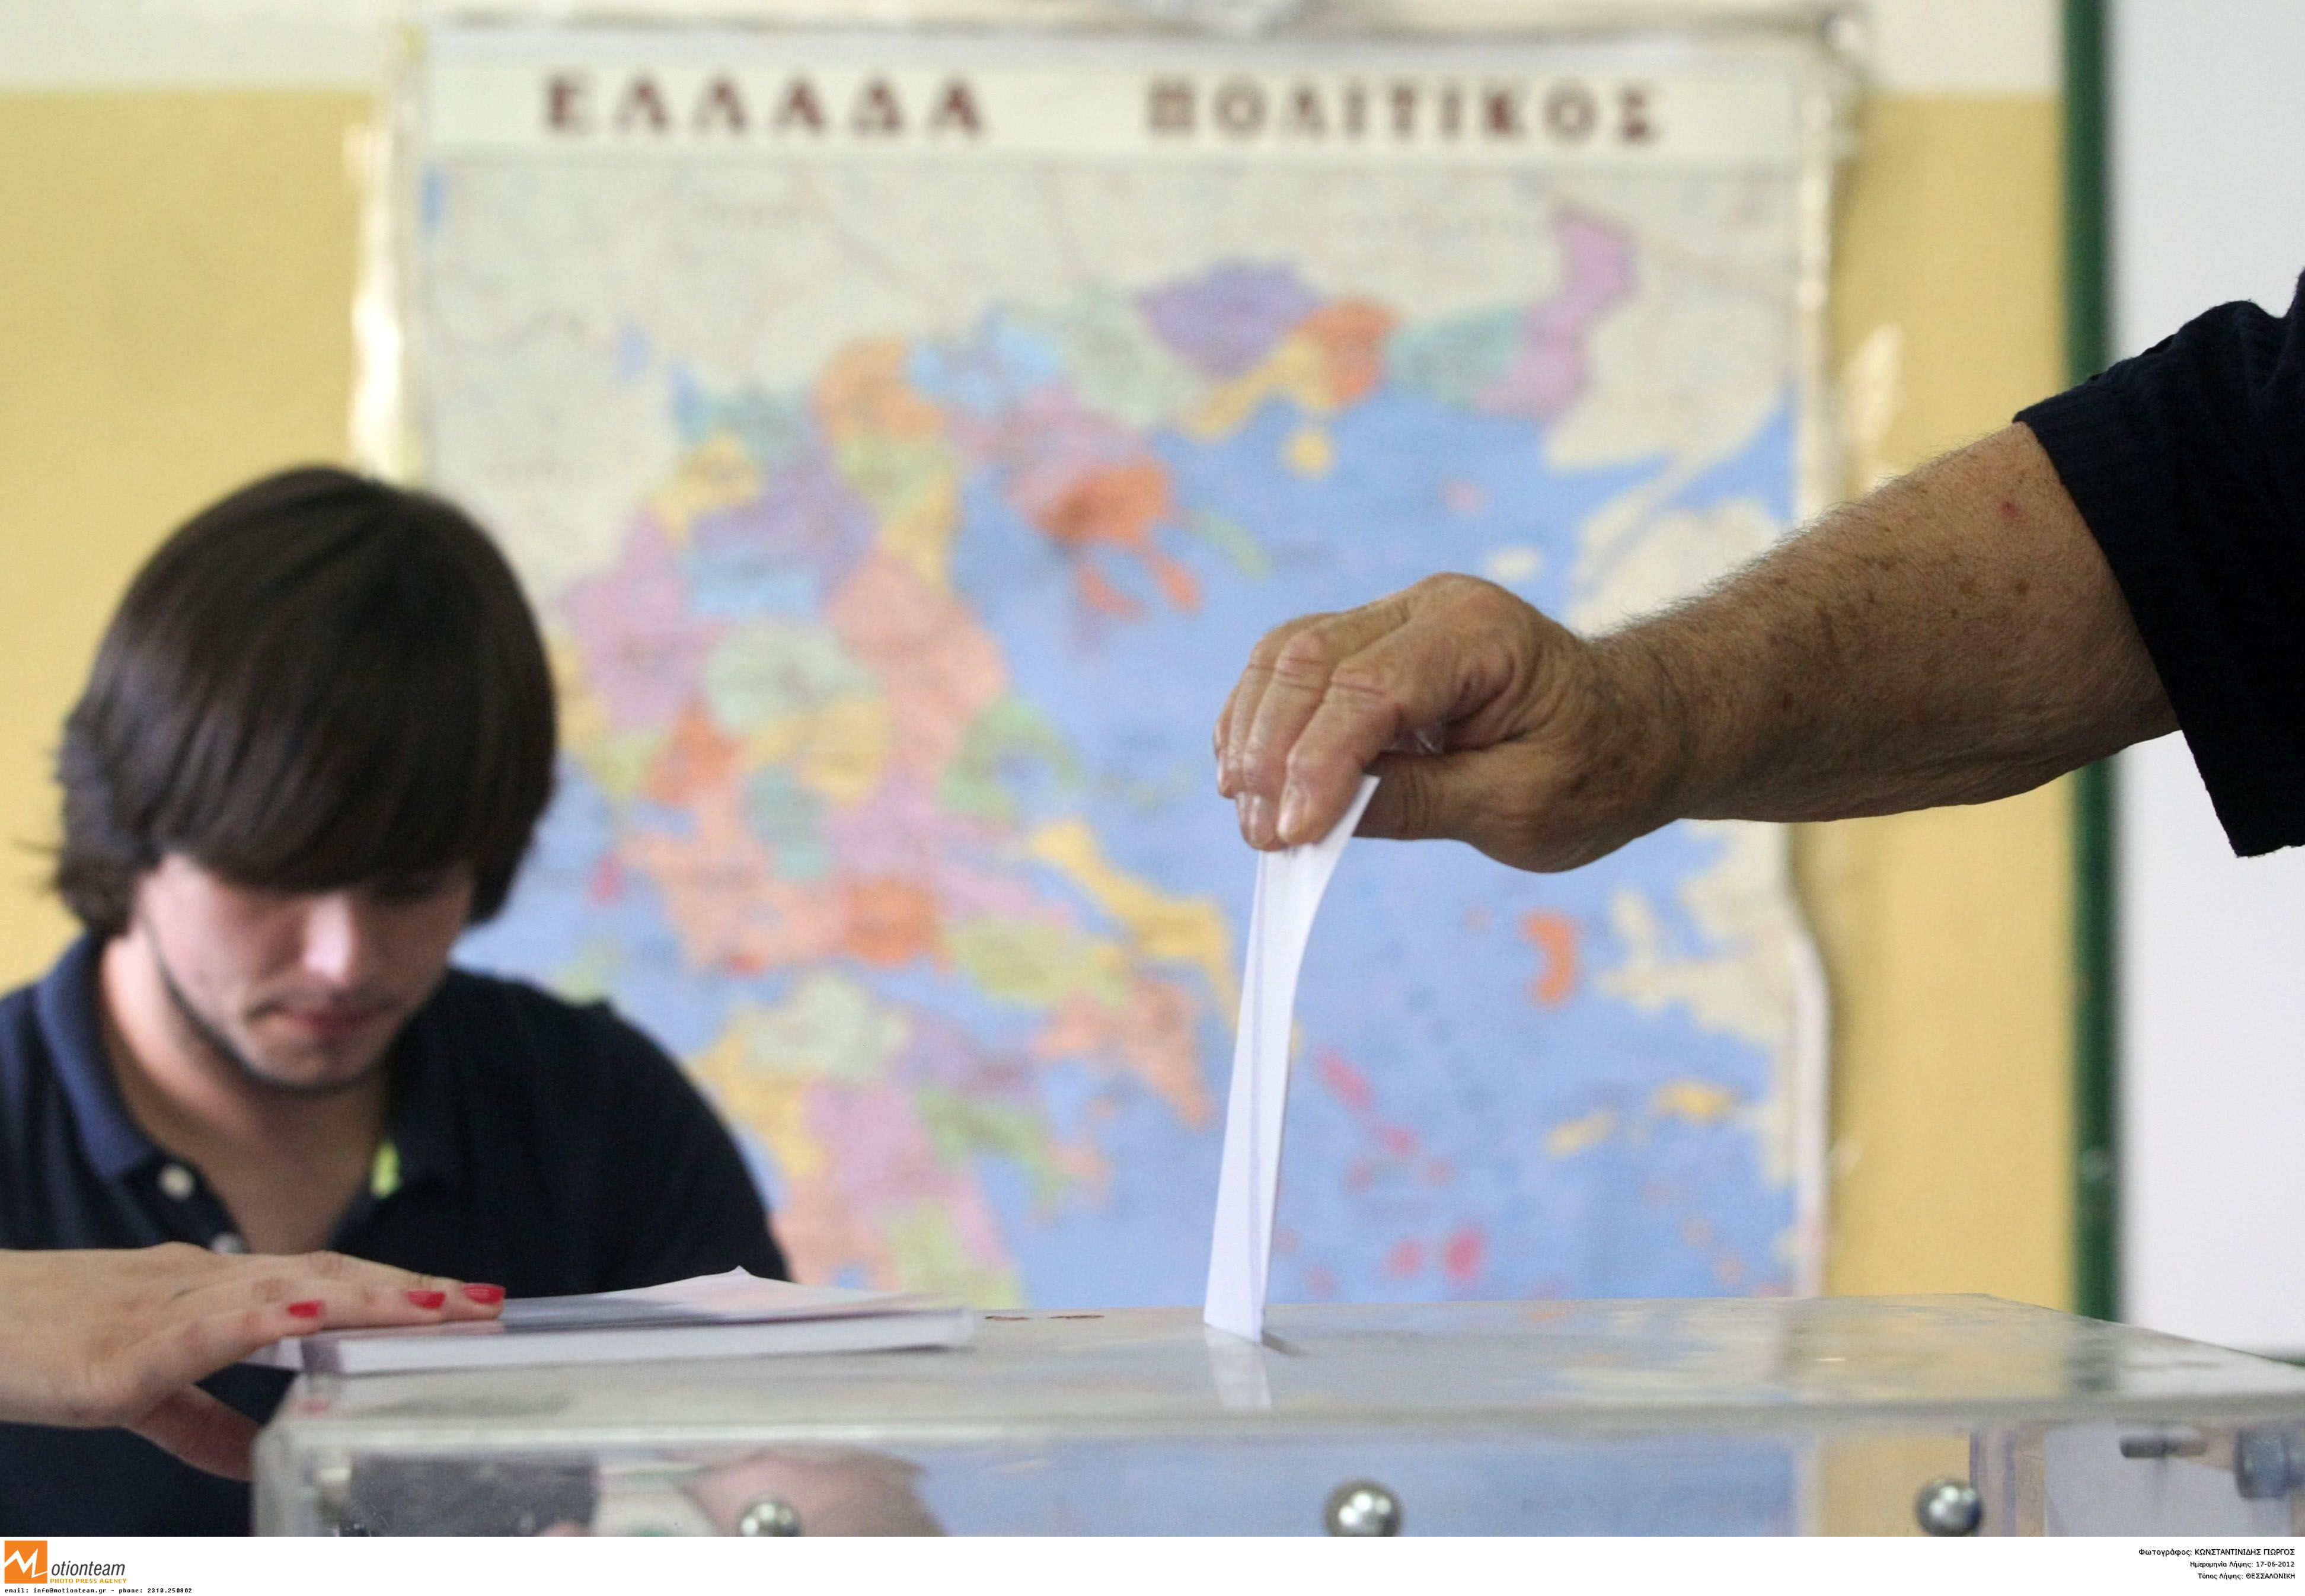 Προηγείται κατά 2,5% ο ΣΥΡΙΖΑ έναντι της ΝΔ σύμφωνα με γκάλοπ